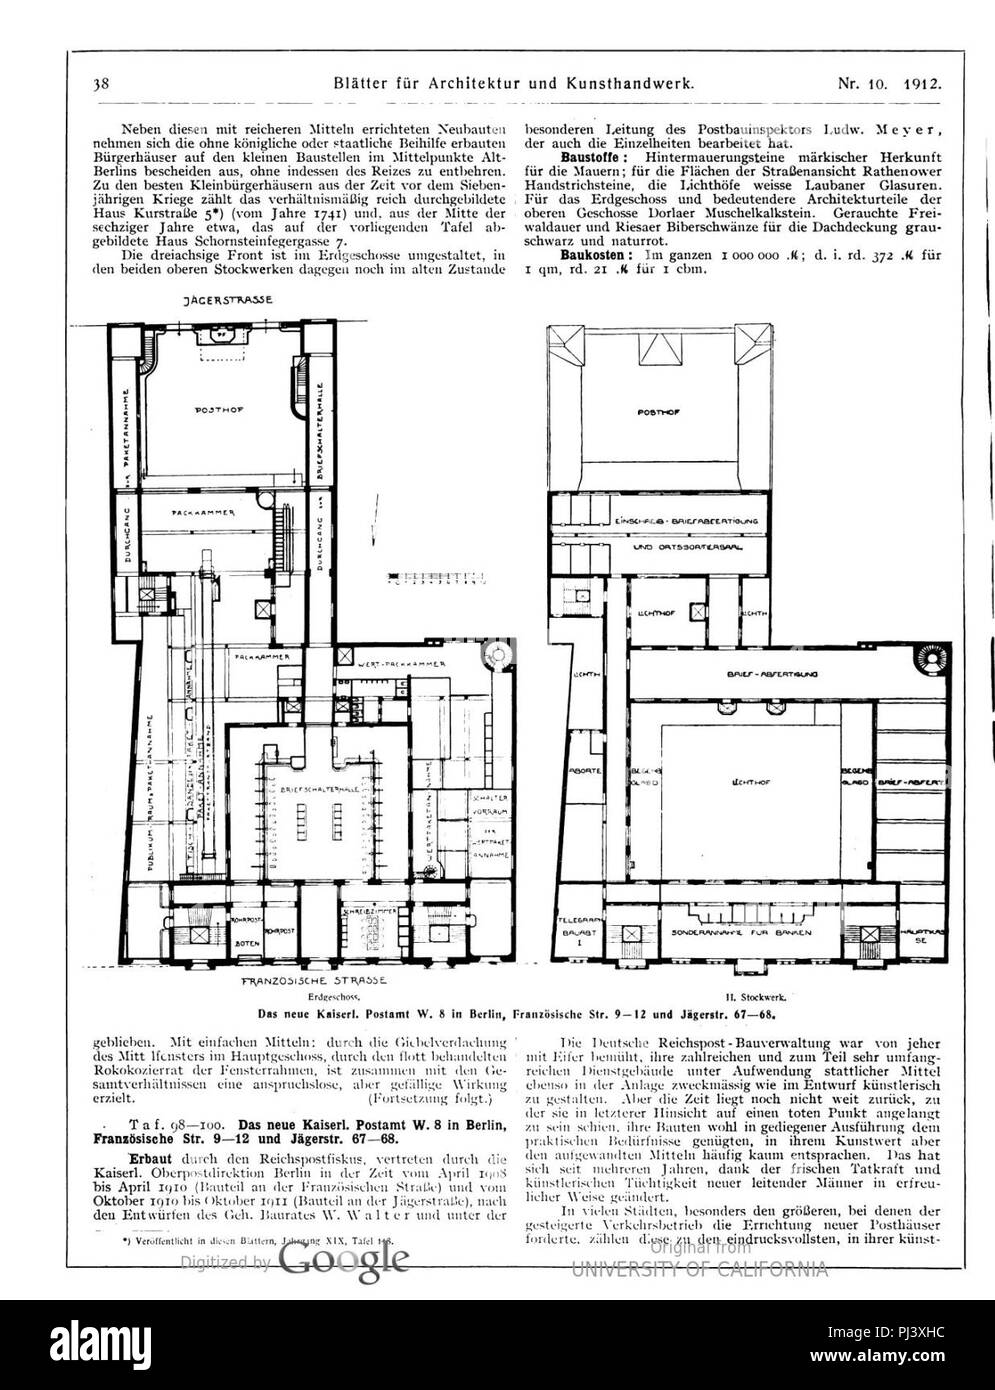 B kaiserl postamt französ str. 9-12 und jägerstr. 67-68 (blätter arch kunsthandw 25 (1912), S. 38. Stock Photo